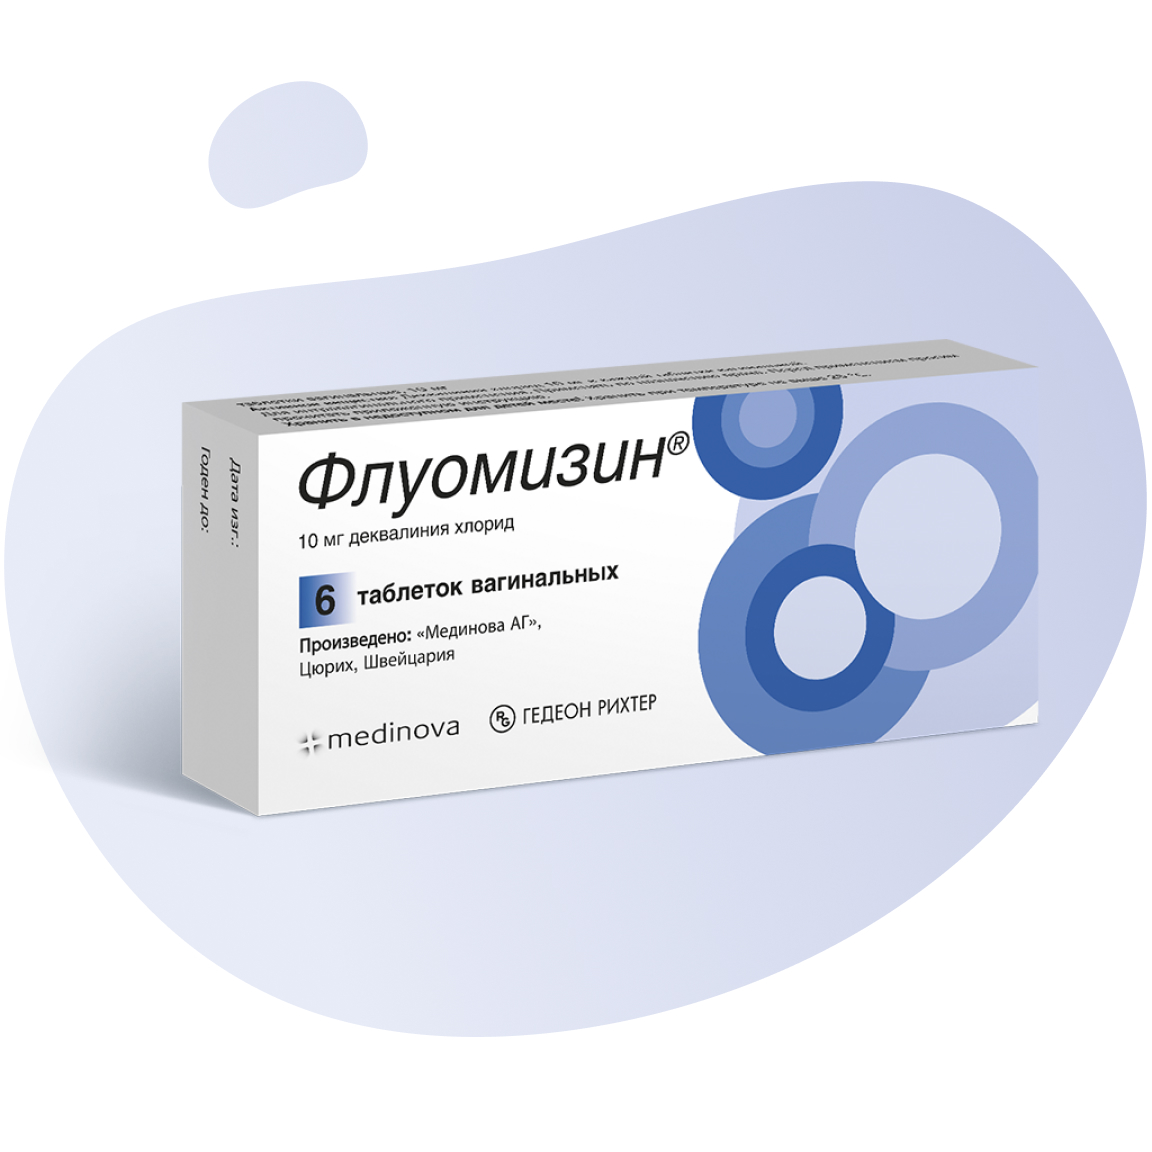 Флуомизин, 10 мг, таблетки вагинальные, 6 шт. фото